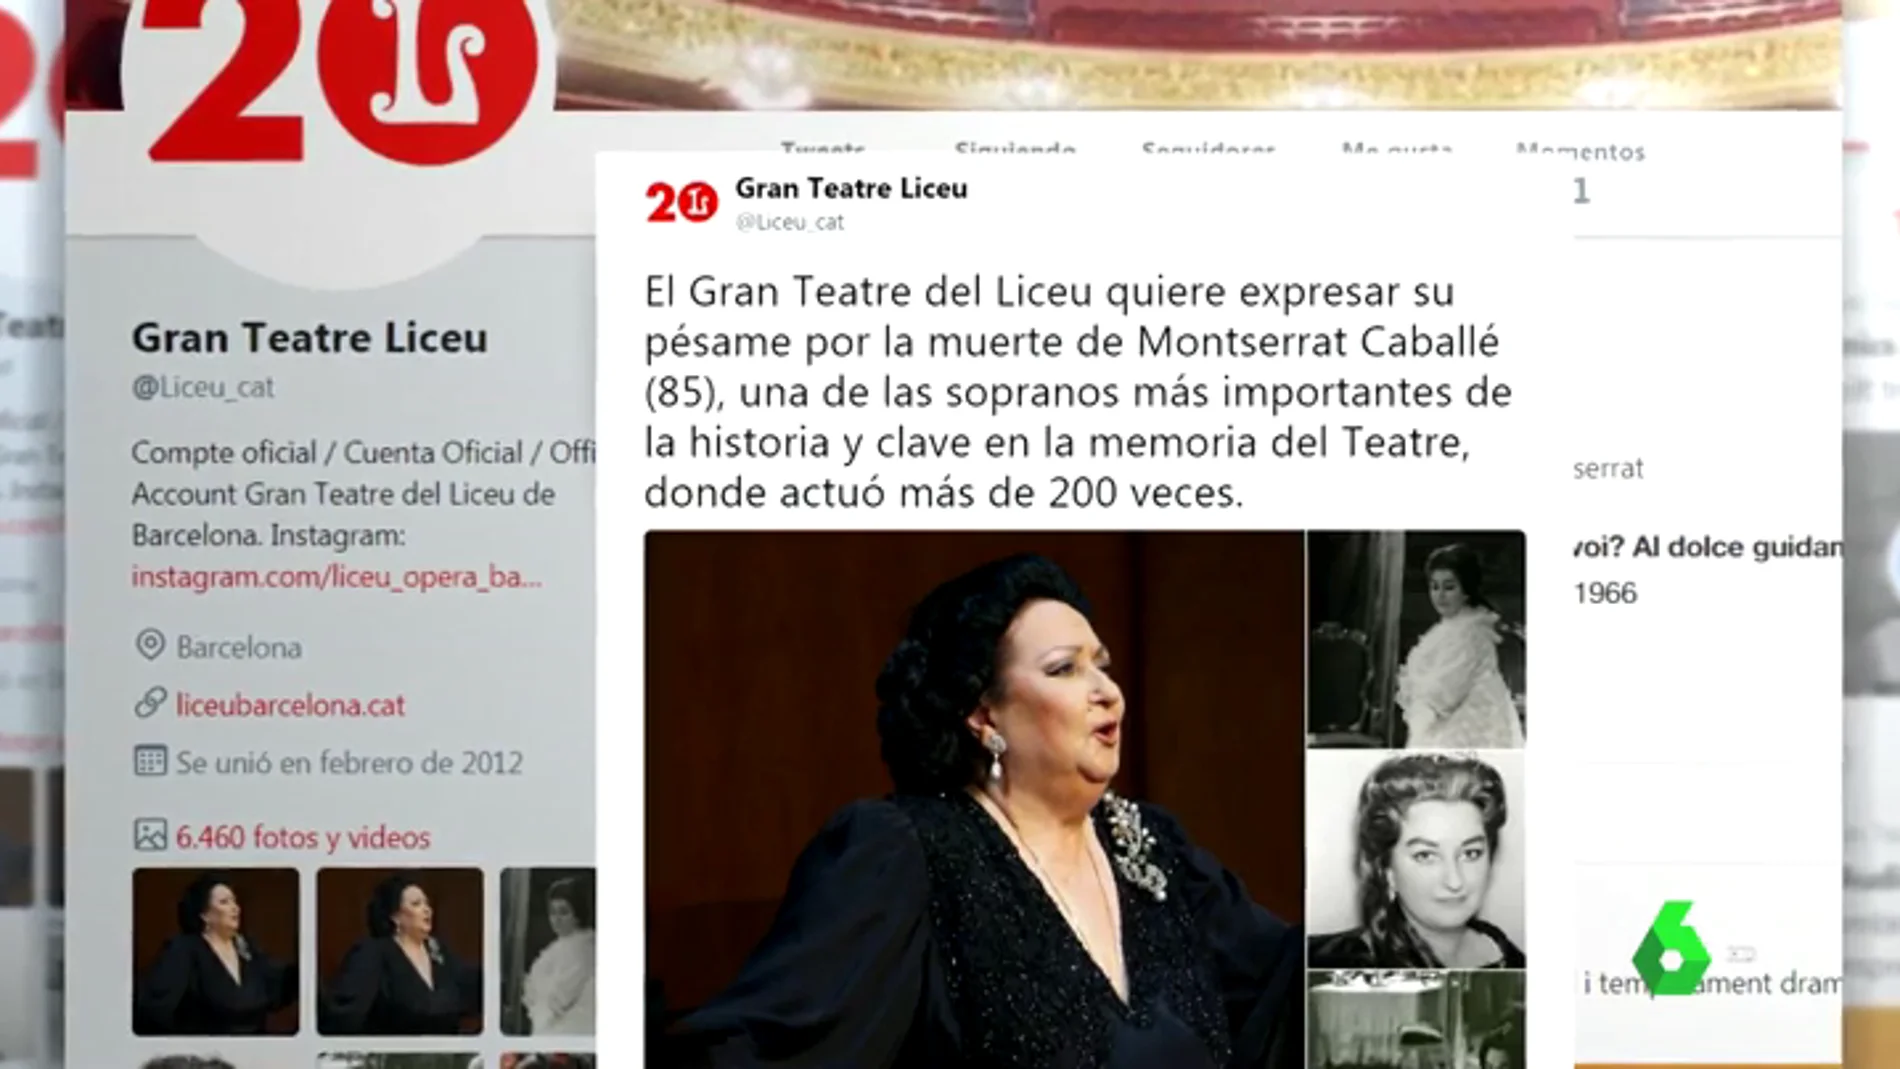 Su querido Liceo, La Scala de Milán, el Royal Opera… los teatros y el mundo de la ópera despiden a Montserrat Caballé